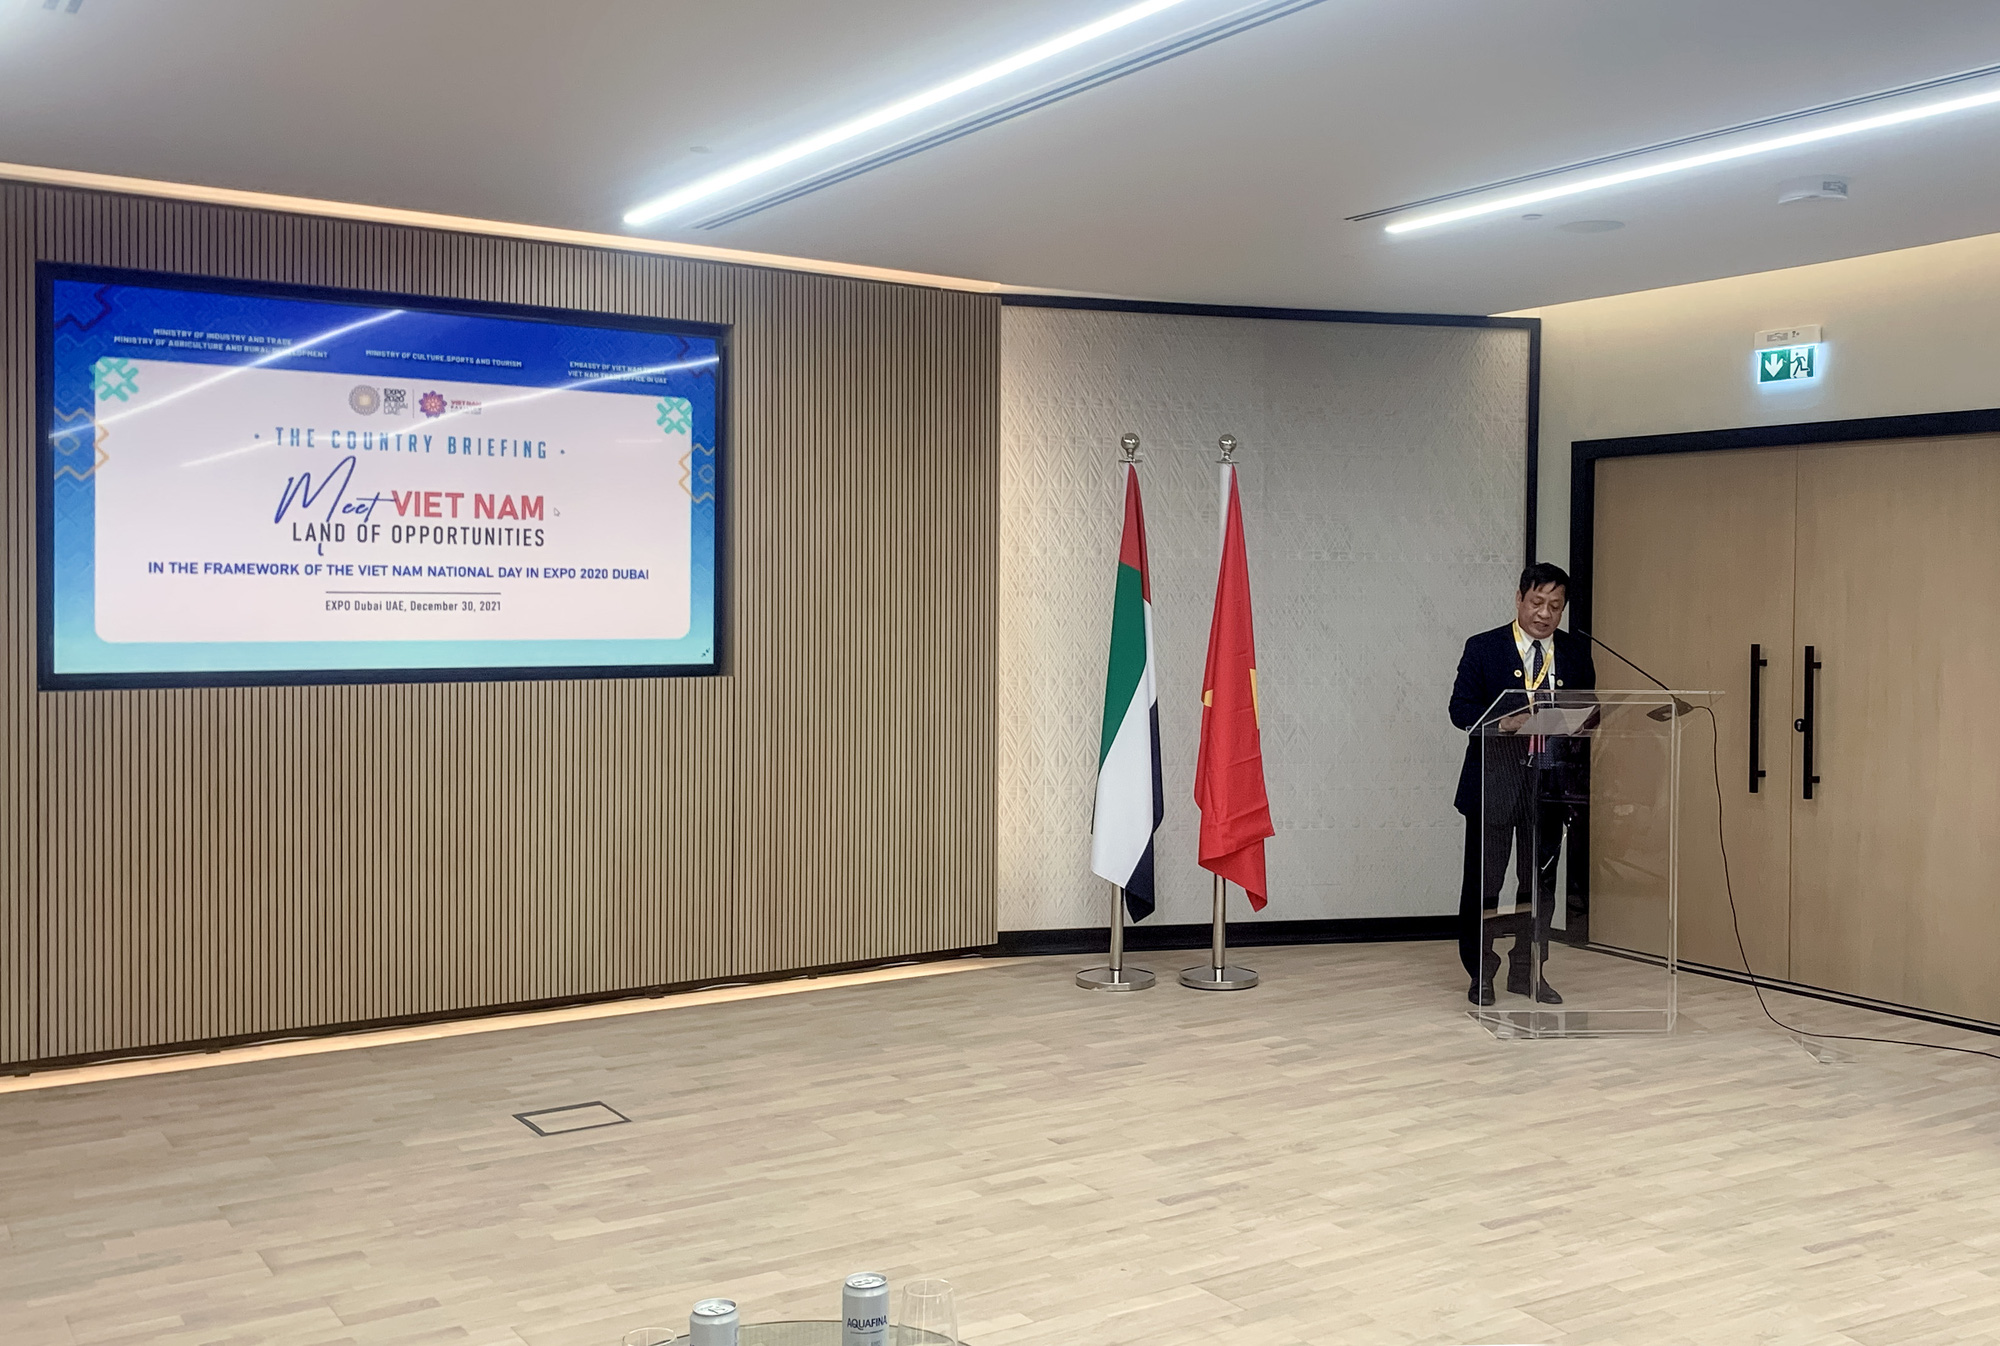 “Gặp gỡ Việt Nam – Đất nước của cơ hội” mở ra cánh cửa giao thương quốc tế tại EXPO 2020 Dubai - Ảnh 4.